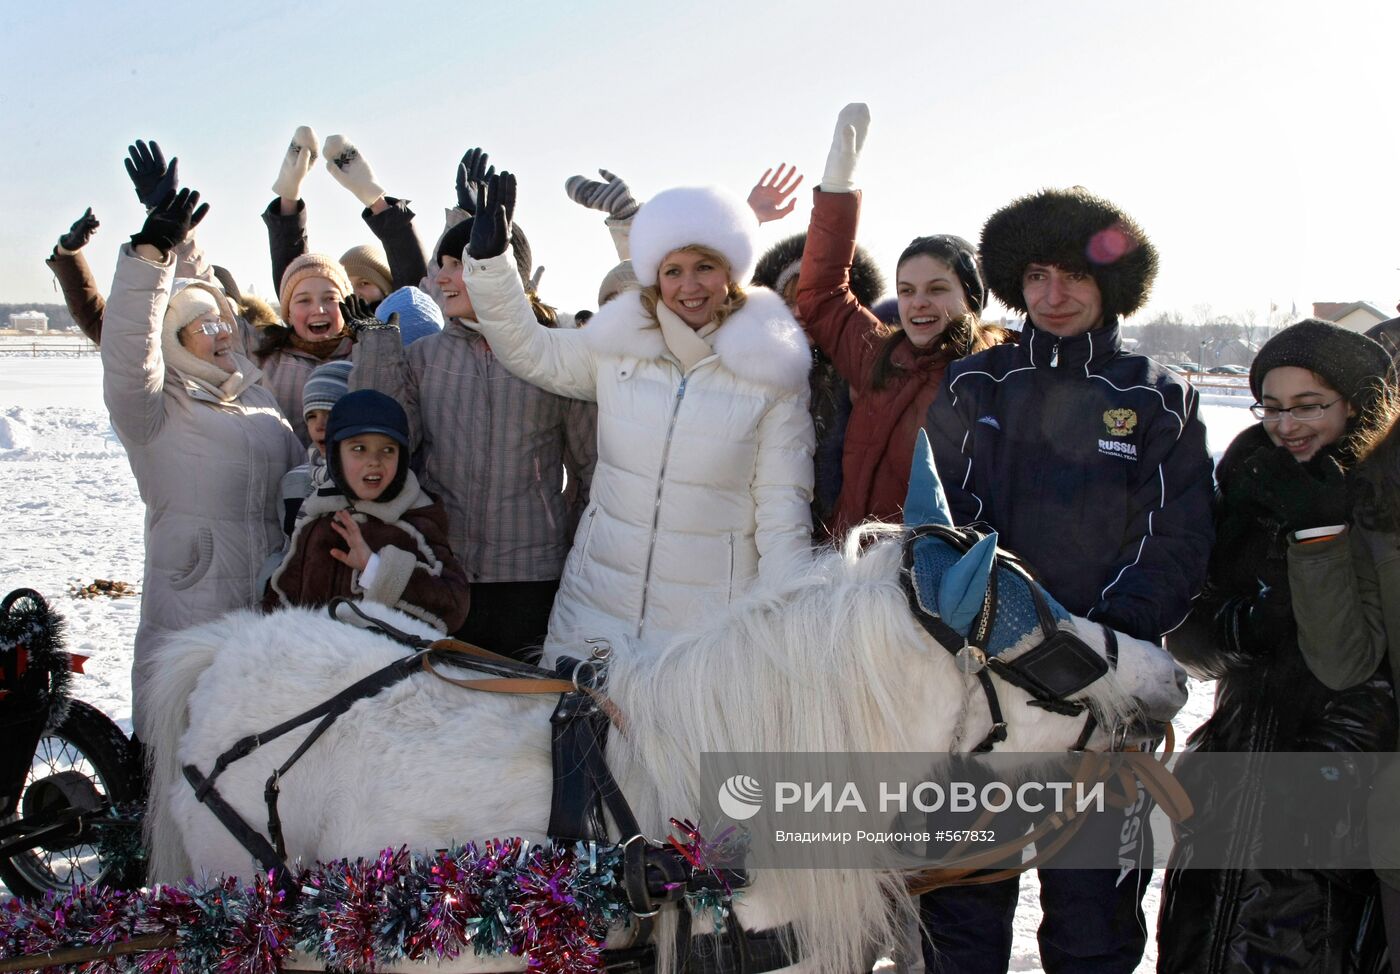 Светлана Медведева на празднике "Веселая масленица"